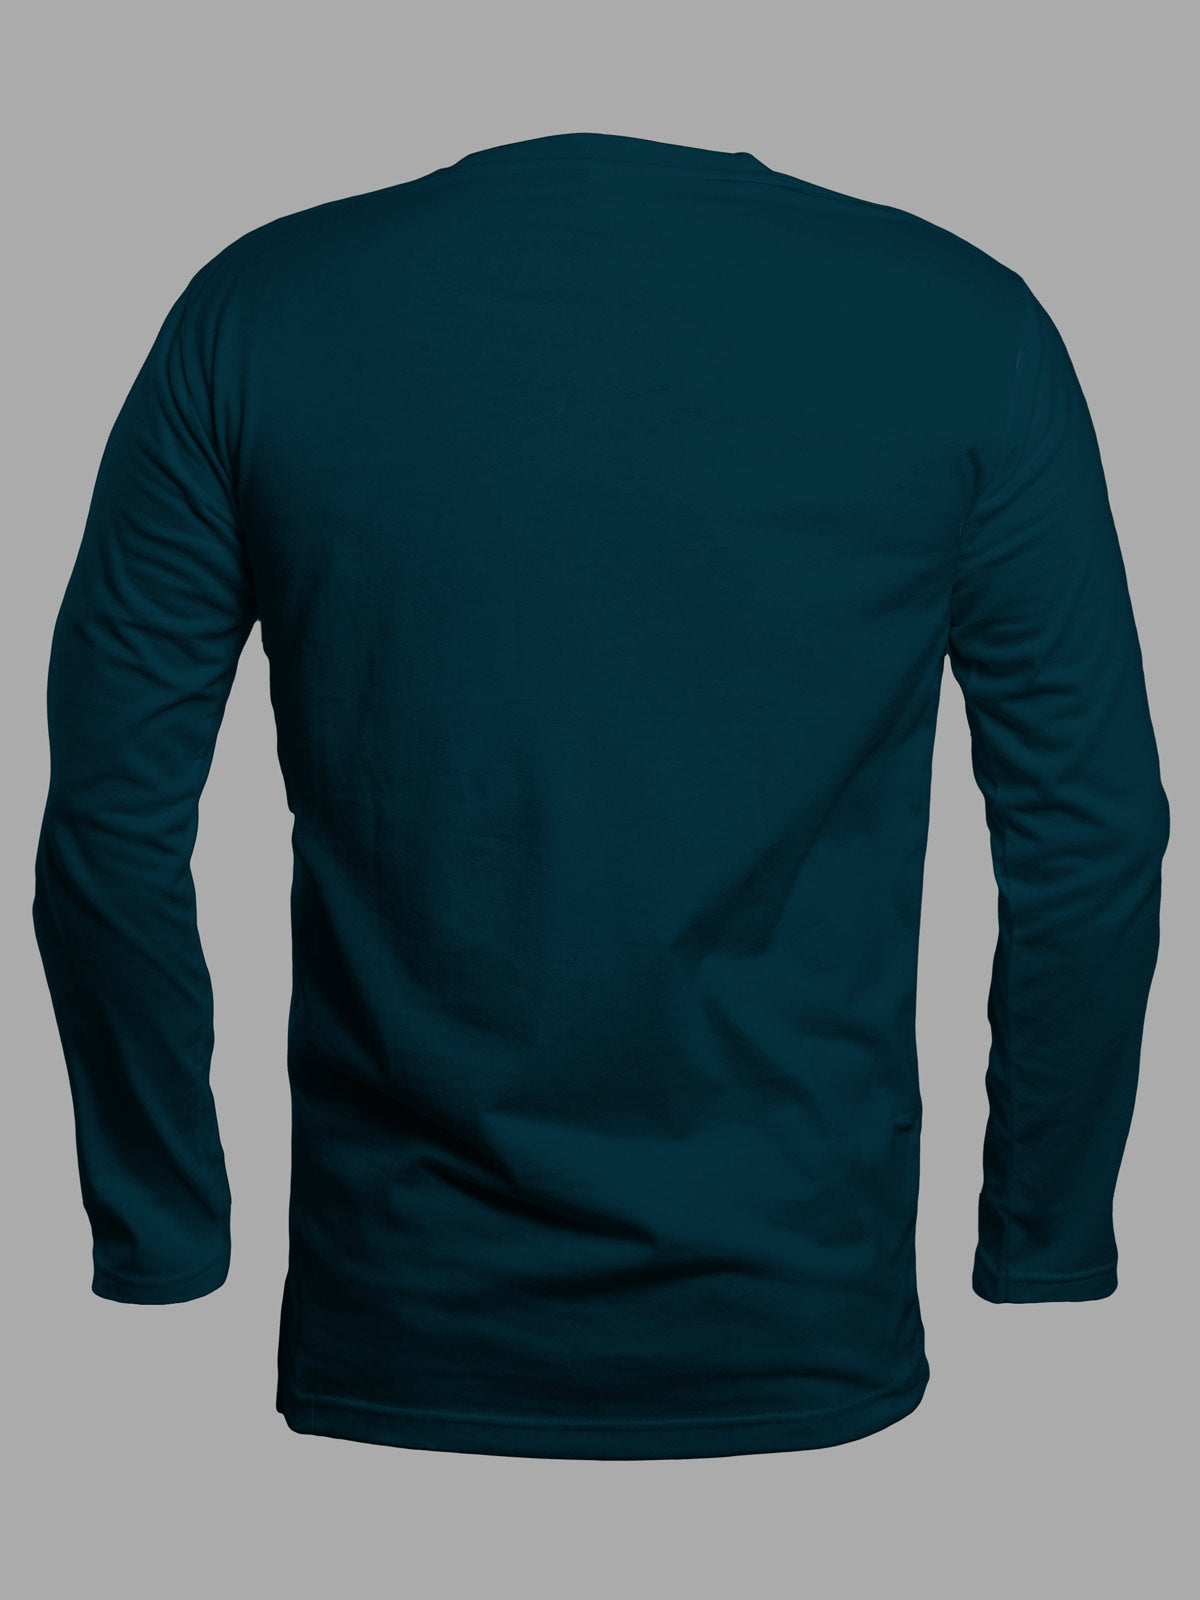 Blue-full-sleeves-t-shirt